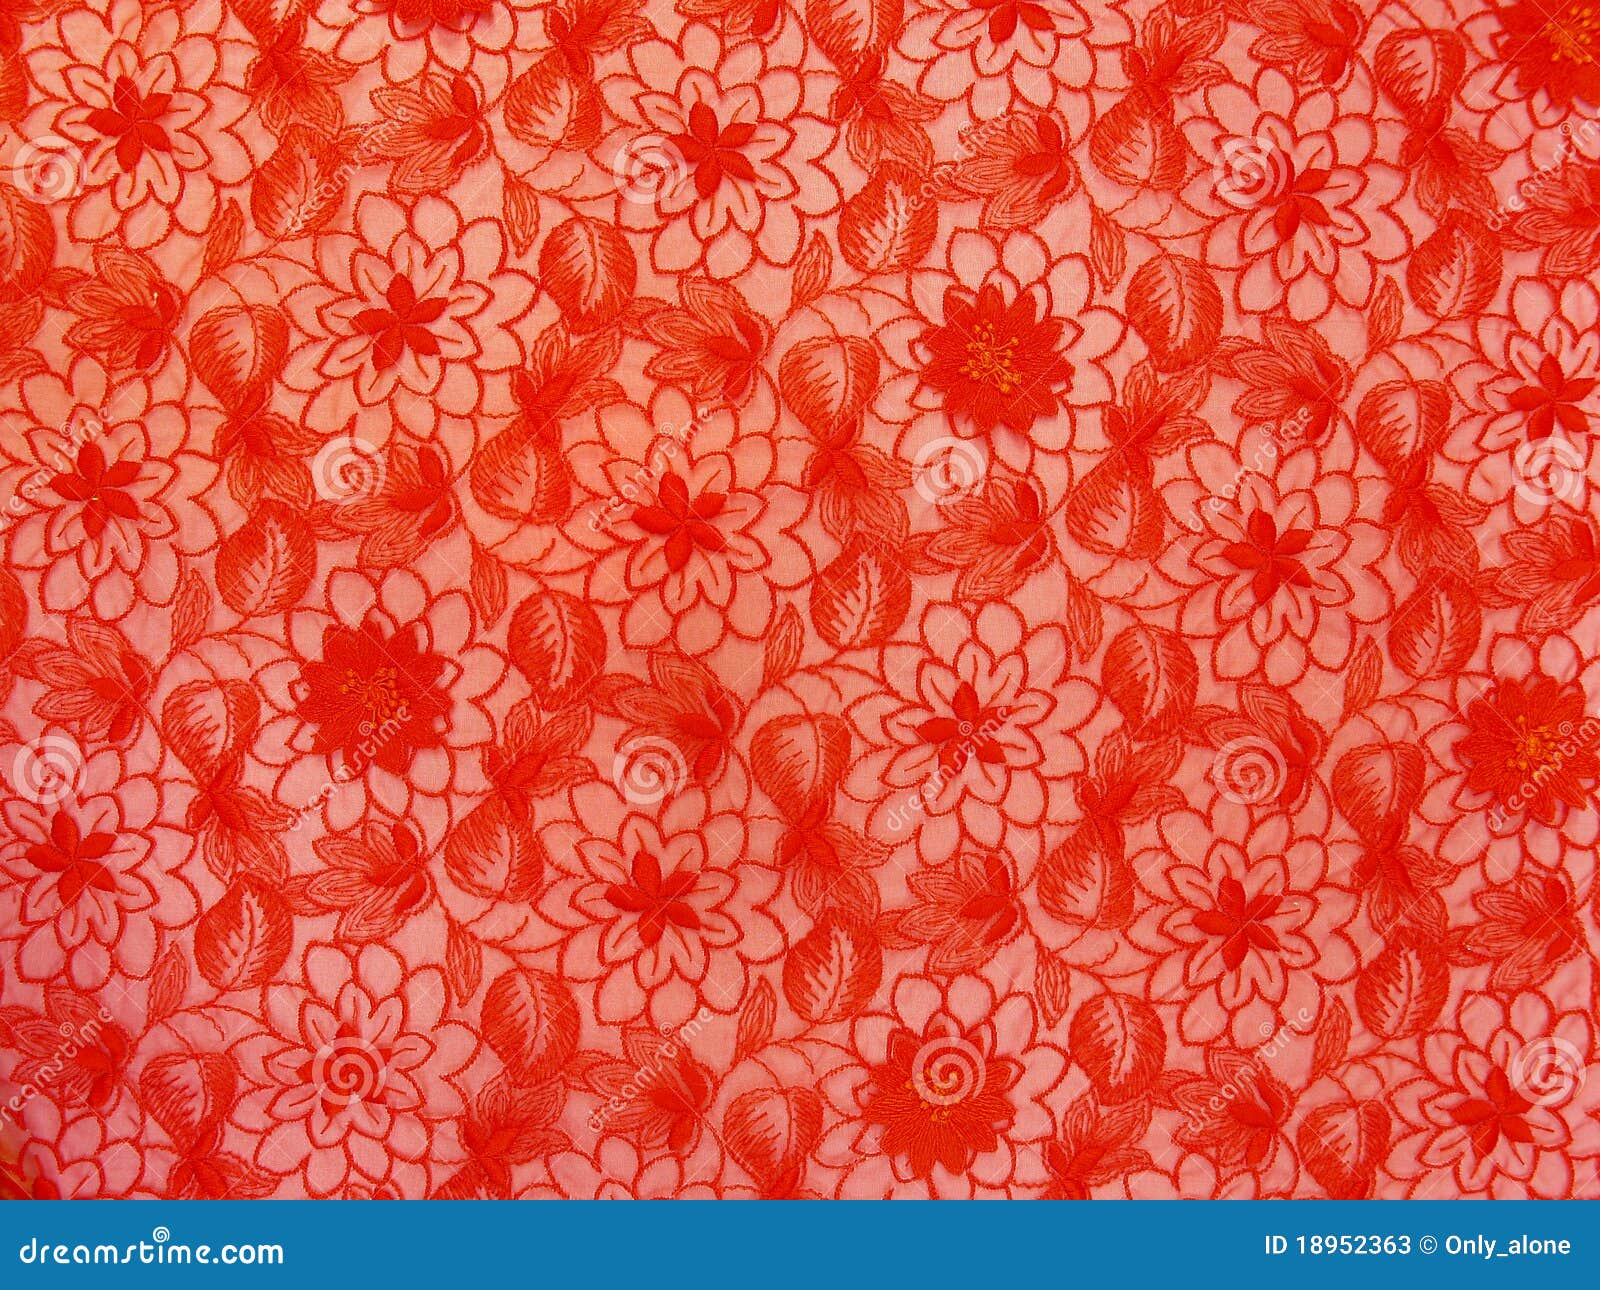 Khám phá hình nền đỏ hoa văn ren đầy quyến rũ, mang đến sự sang trọng và đặc biệt cho thiết bị của bạn. Hình ảnh hoa văn ren đỏ tinh tế sẽ giúp tăng tính thẩm mỹ và tạo cảm giác mới mẻ cho màn hình của bạn.